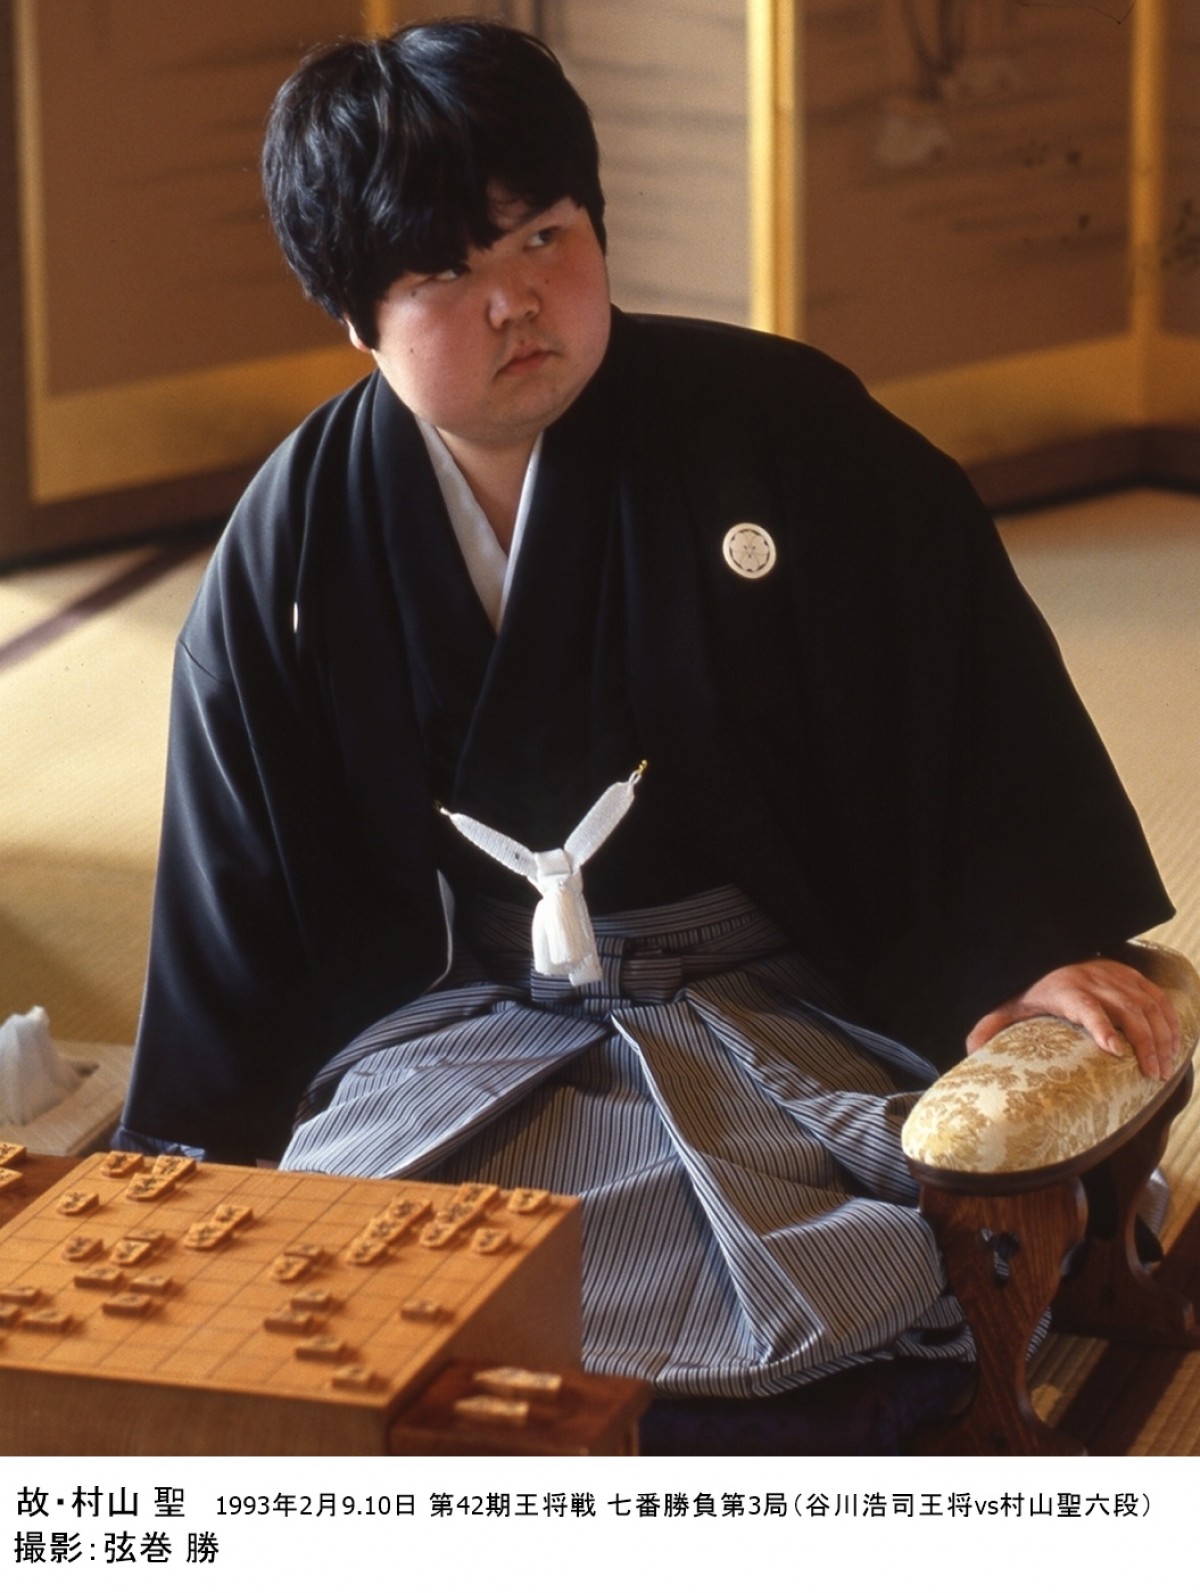 松山ケンイチ、将棋に全てを賭けた“天才棋士”の生き様を魅せる『聖の青春』映画化